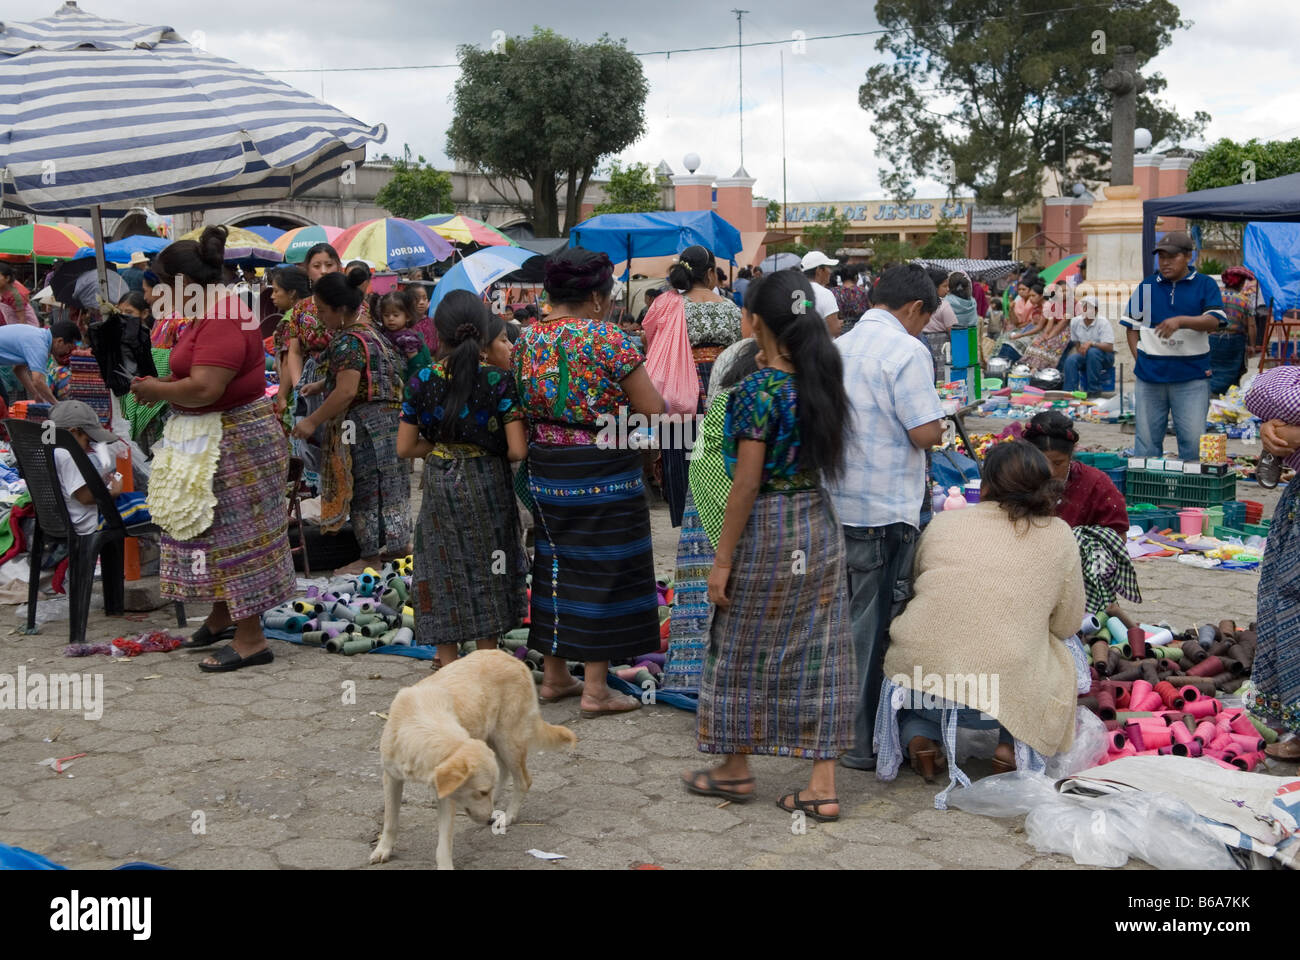 Le donne indigene in variopinti costumi tradizionali sul mercato di Santa Maria de Jesus, Guatemala Foto Stock